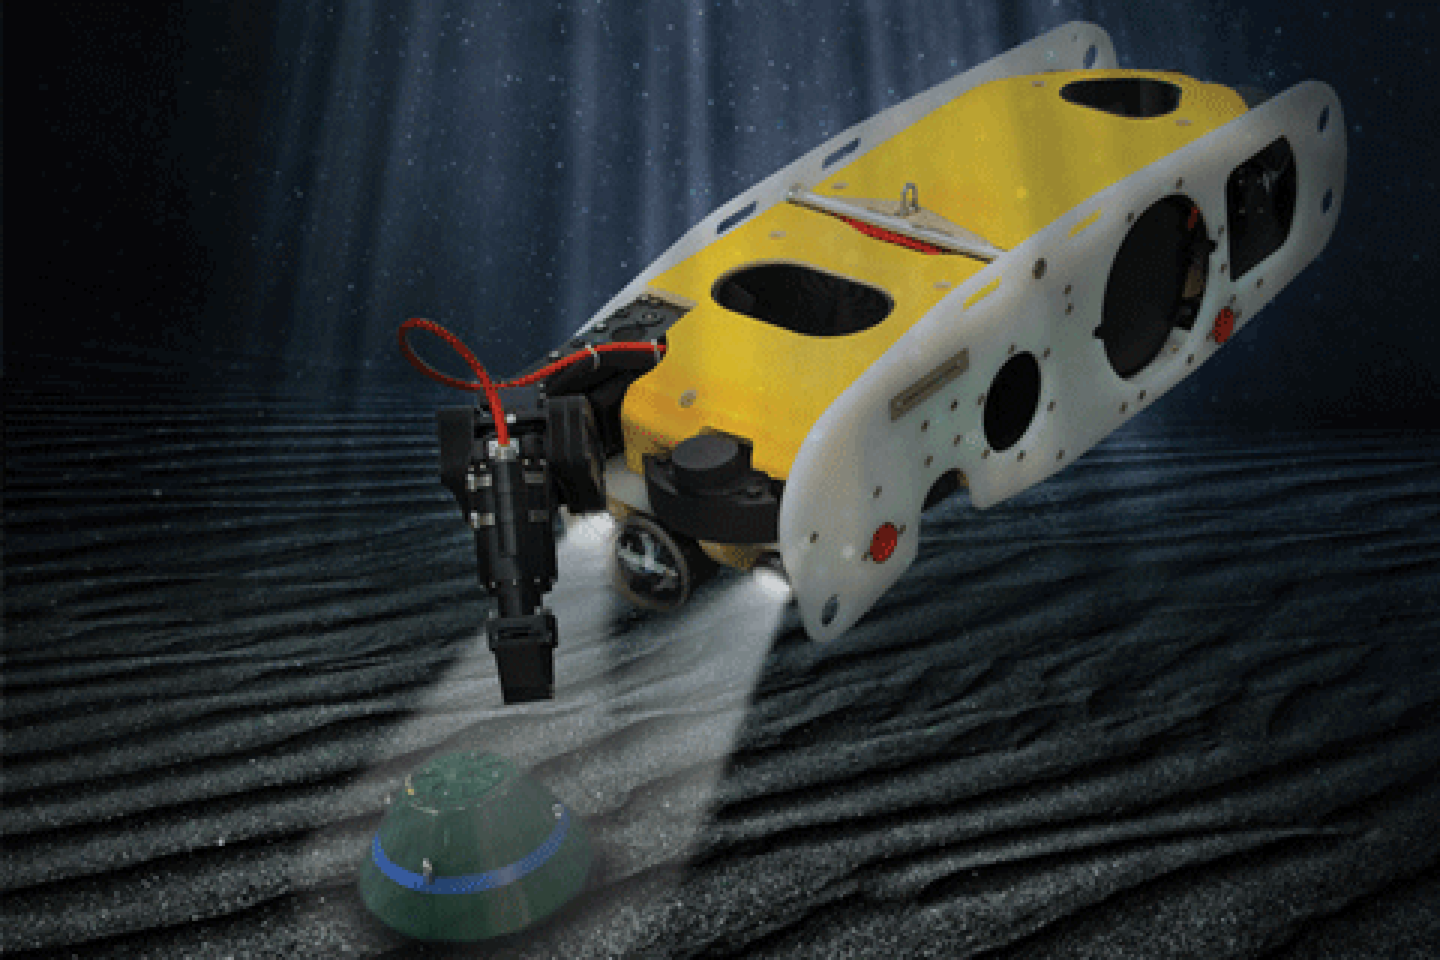  Demonstracijoje dalyvavusi SAAB koncerno (Švedija) sukurta po vandeniu veikianti nuotoliniu būdu pilotuojama sistema „Sea Wasp“, aptinkanti, atpažįstanti ir neutralizuojanti improvizuotus sprogstamuosius užtaisus.<br> „Ocean 2020“ nuotr.